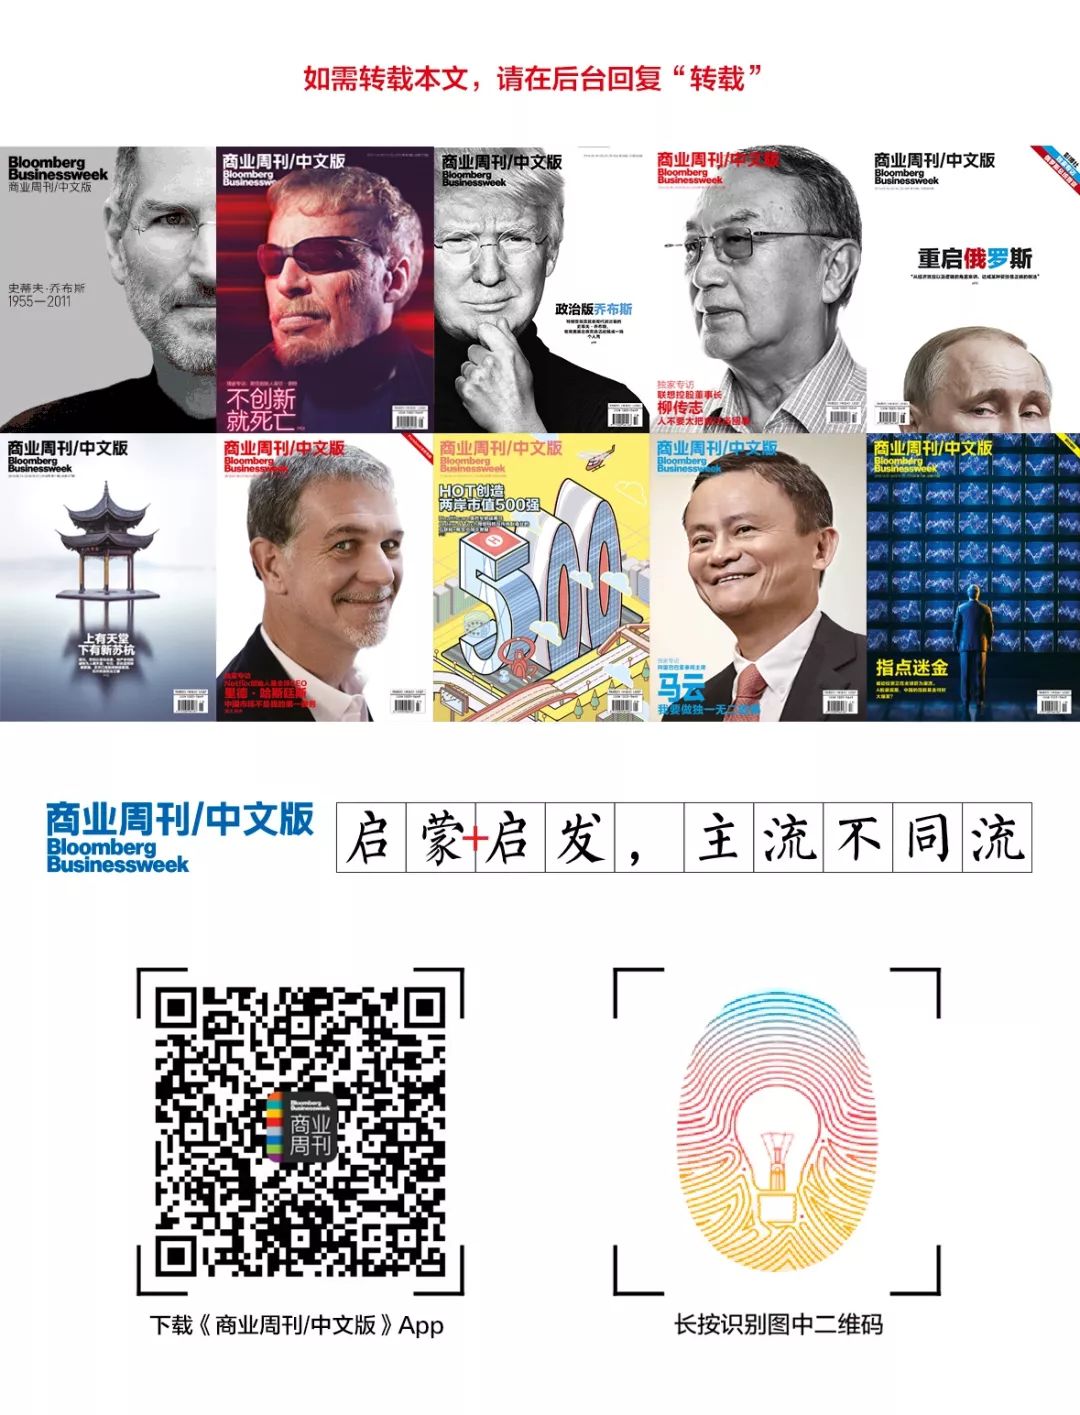 商业周刊中文版 cover image